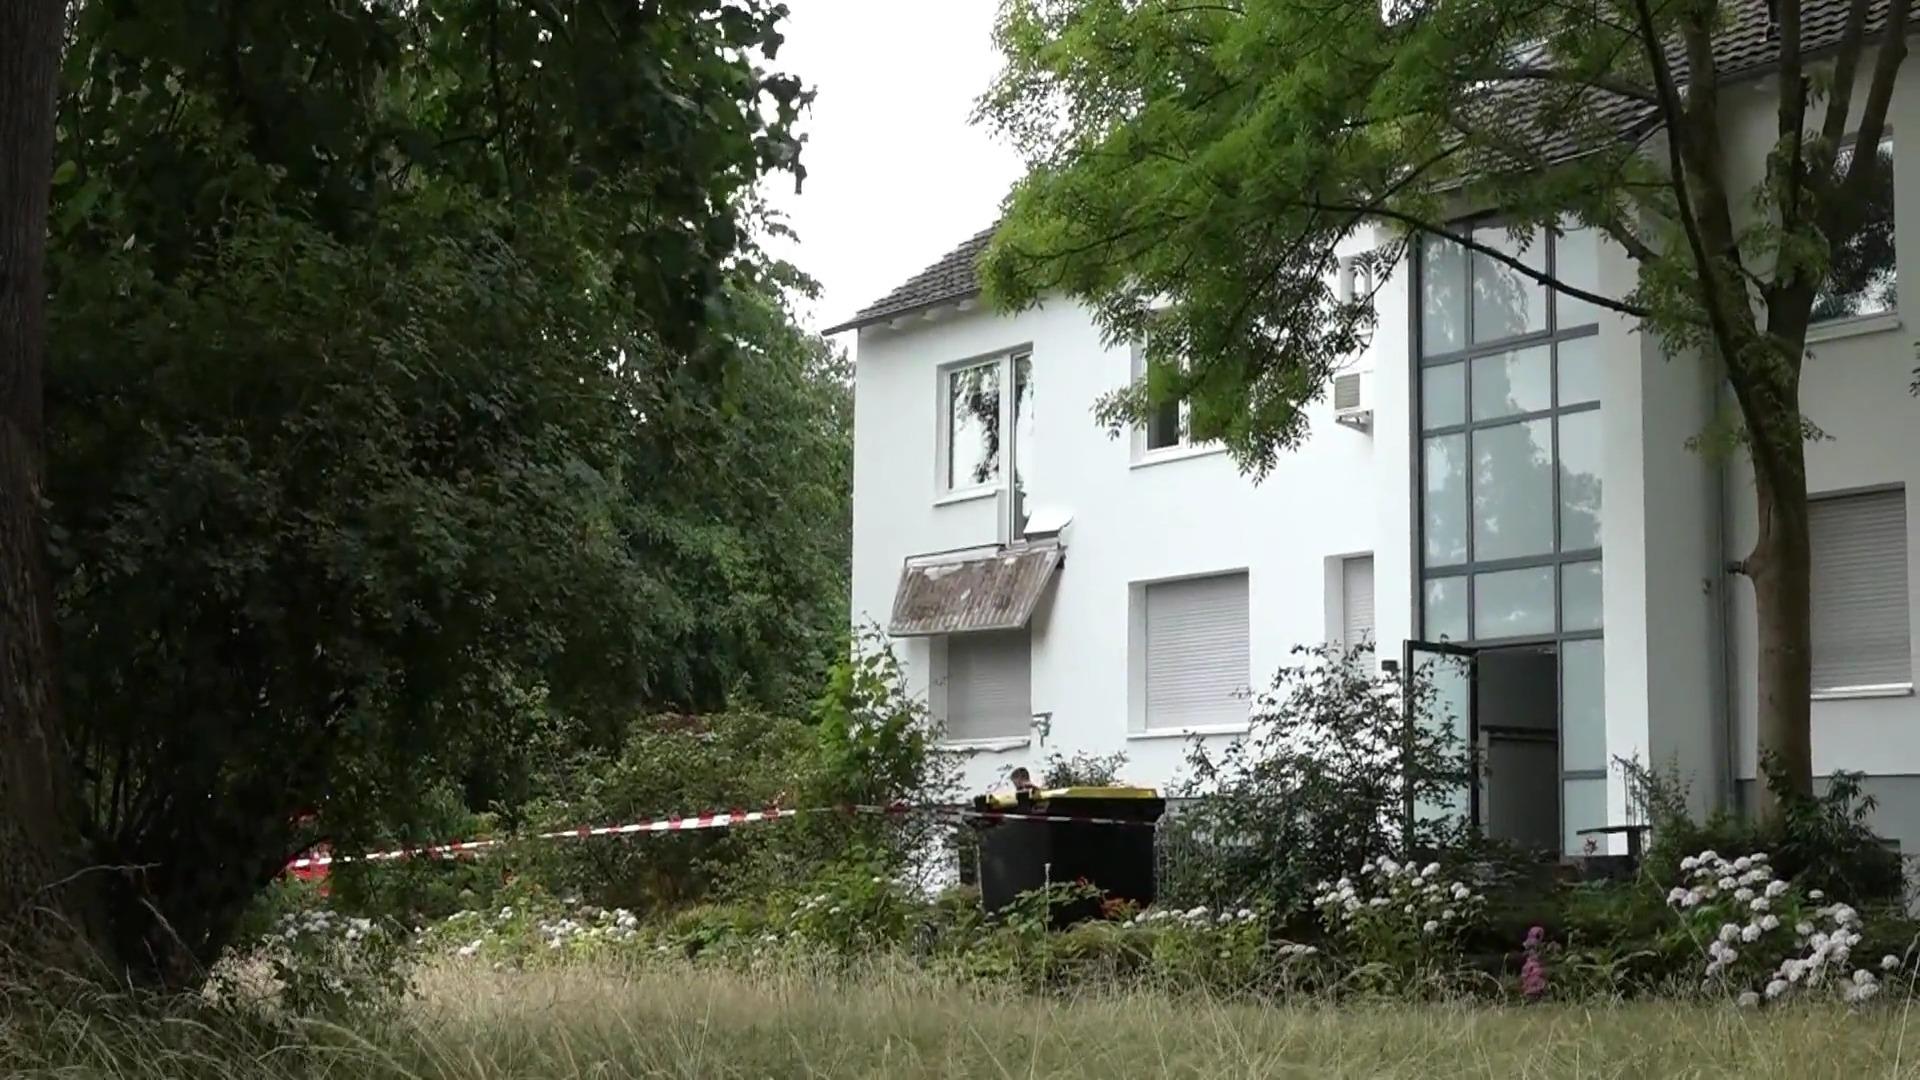 Ön bahçe balkonu çöktü: Monchenkladbach'ta iki kadın ağır yaralandı